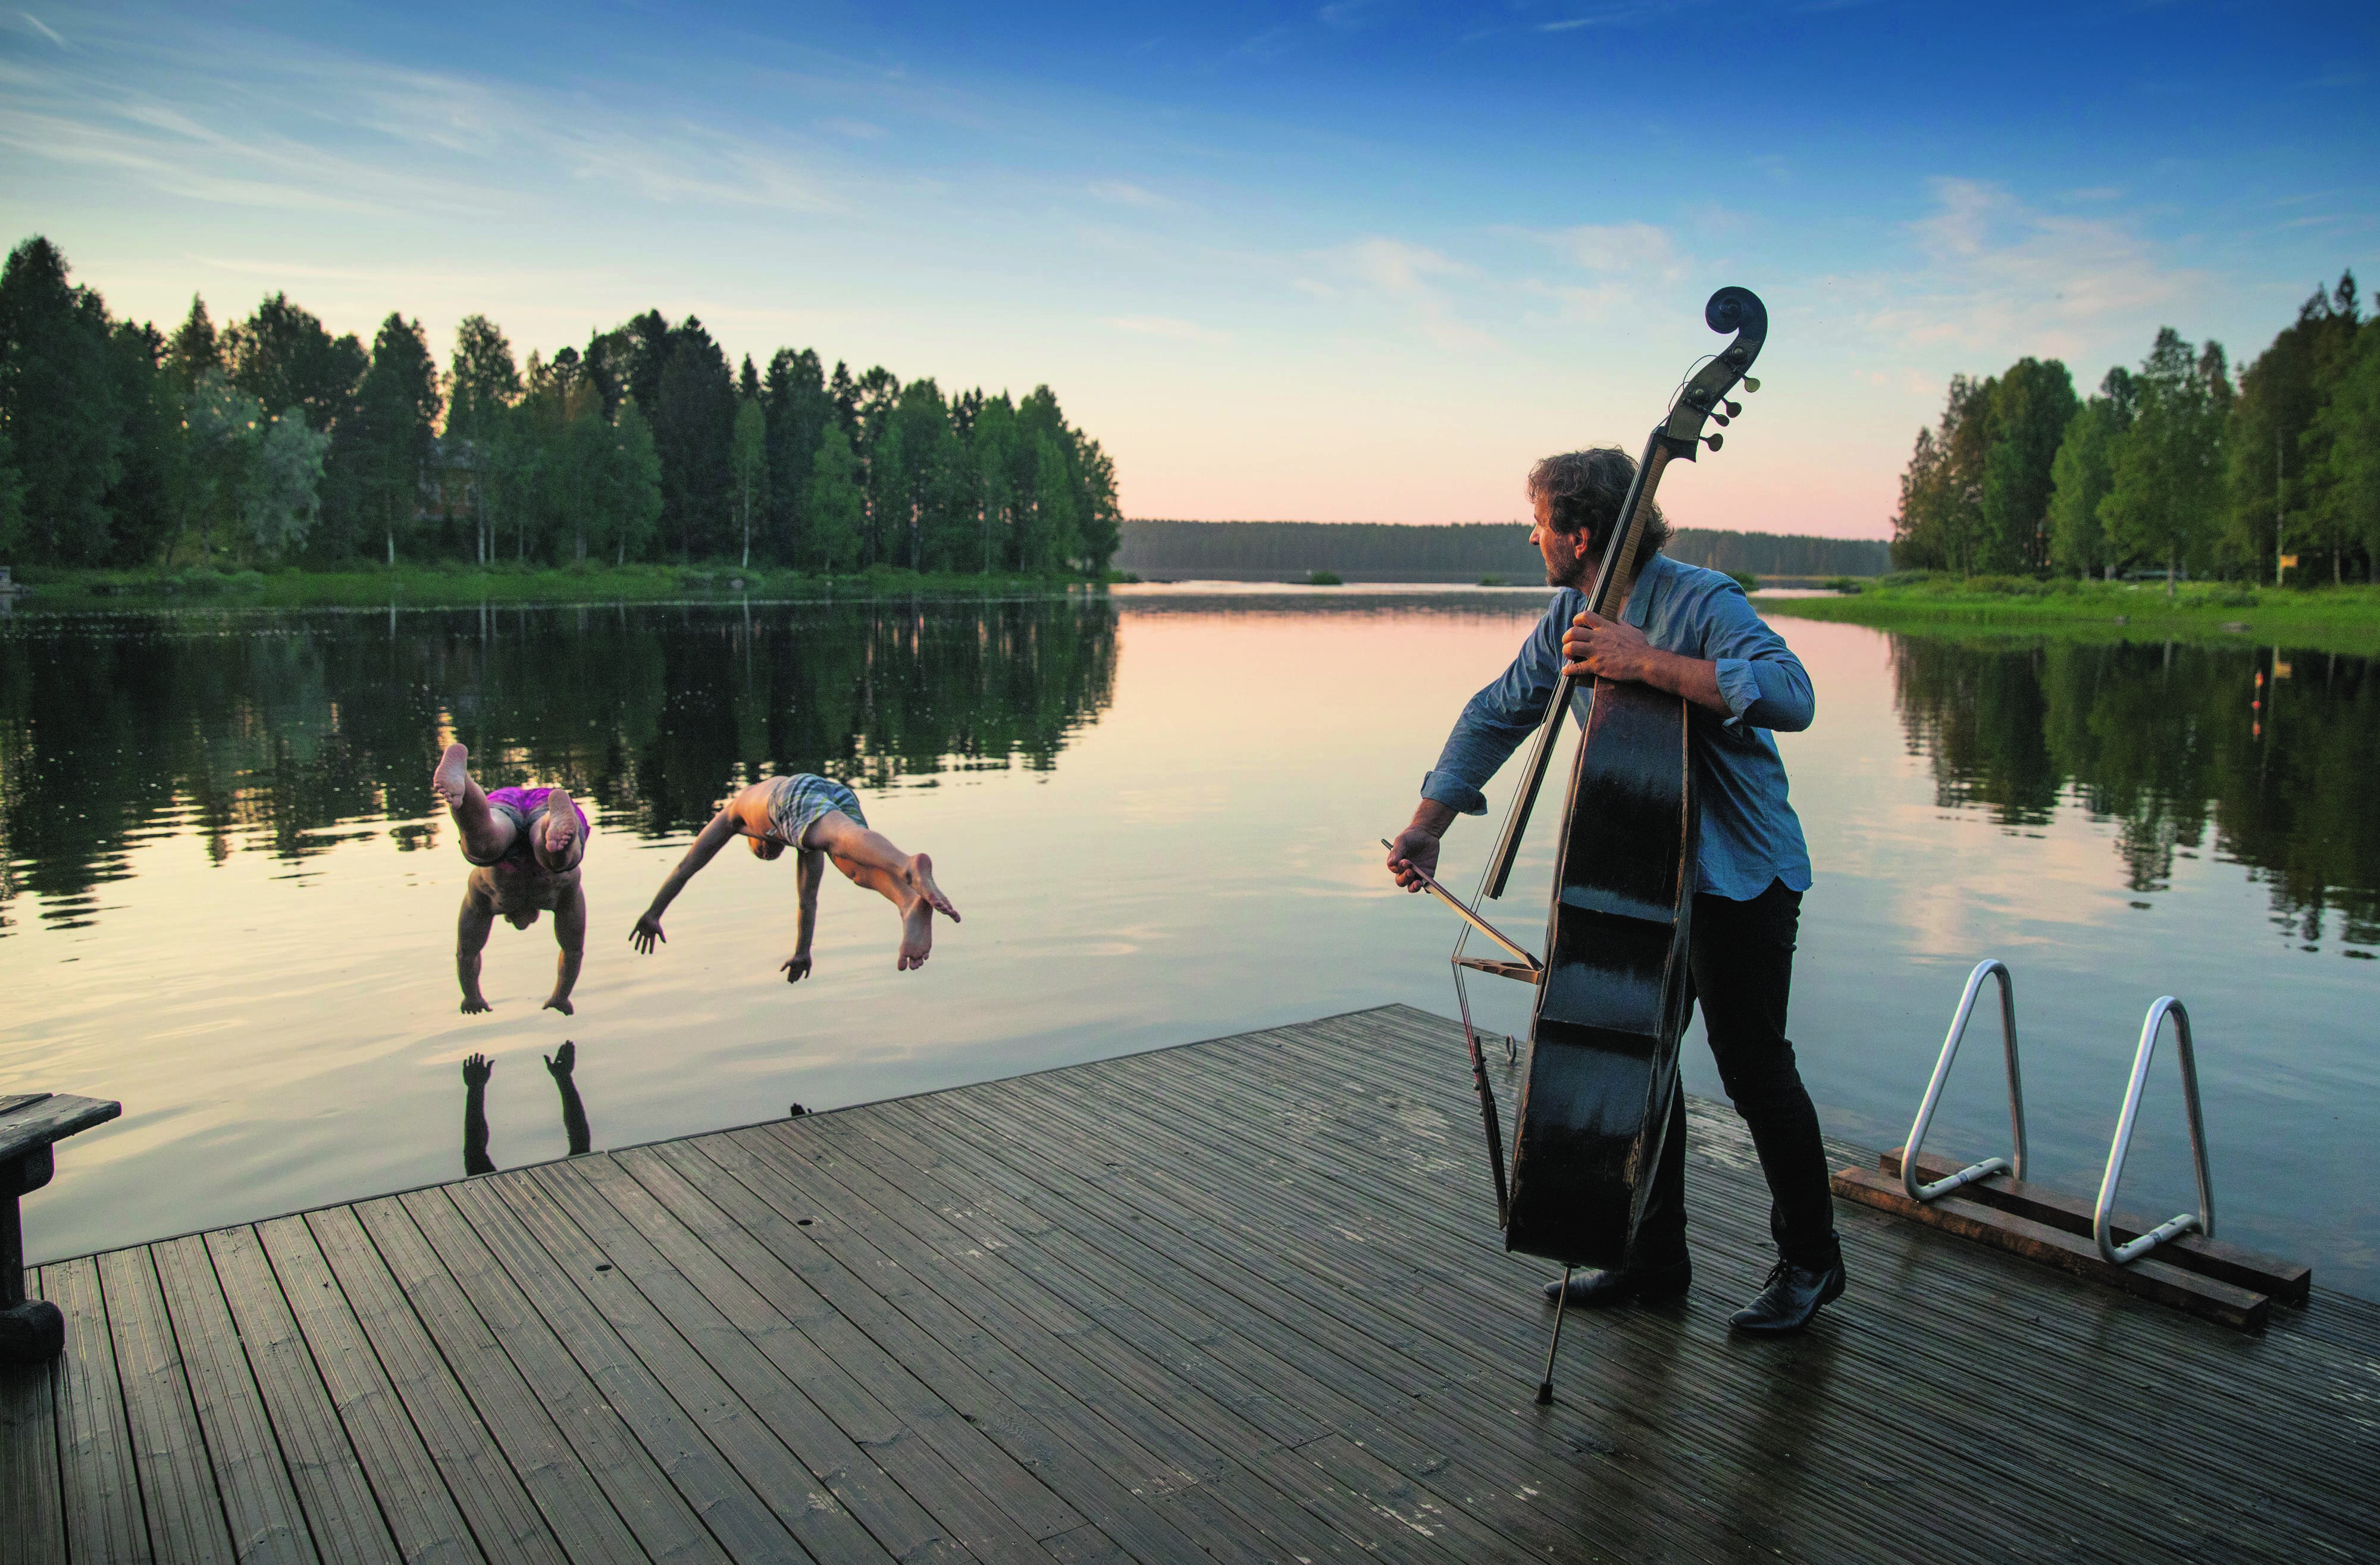 Sur un ponton, un homme joue du violoncelle en regardant des gens plonger dans l’eau dans la région des lacs